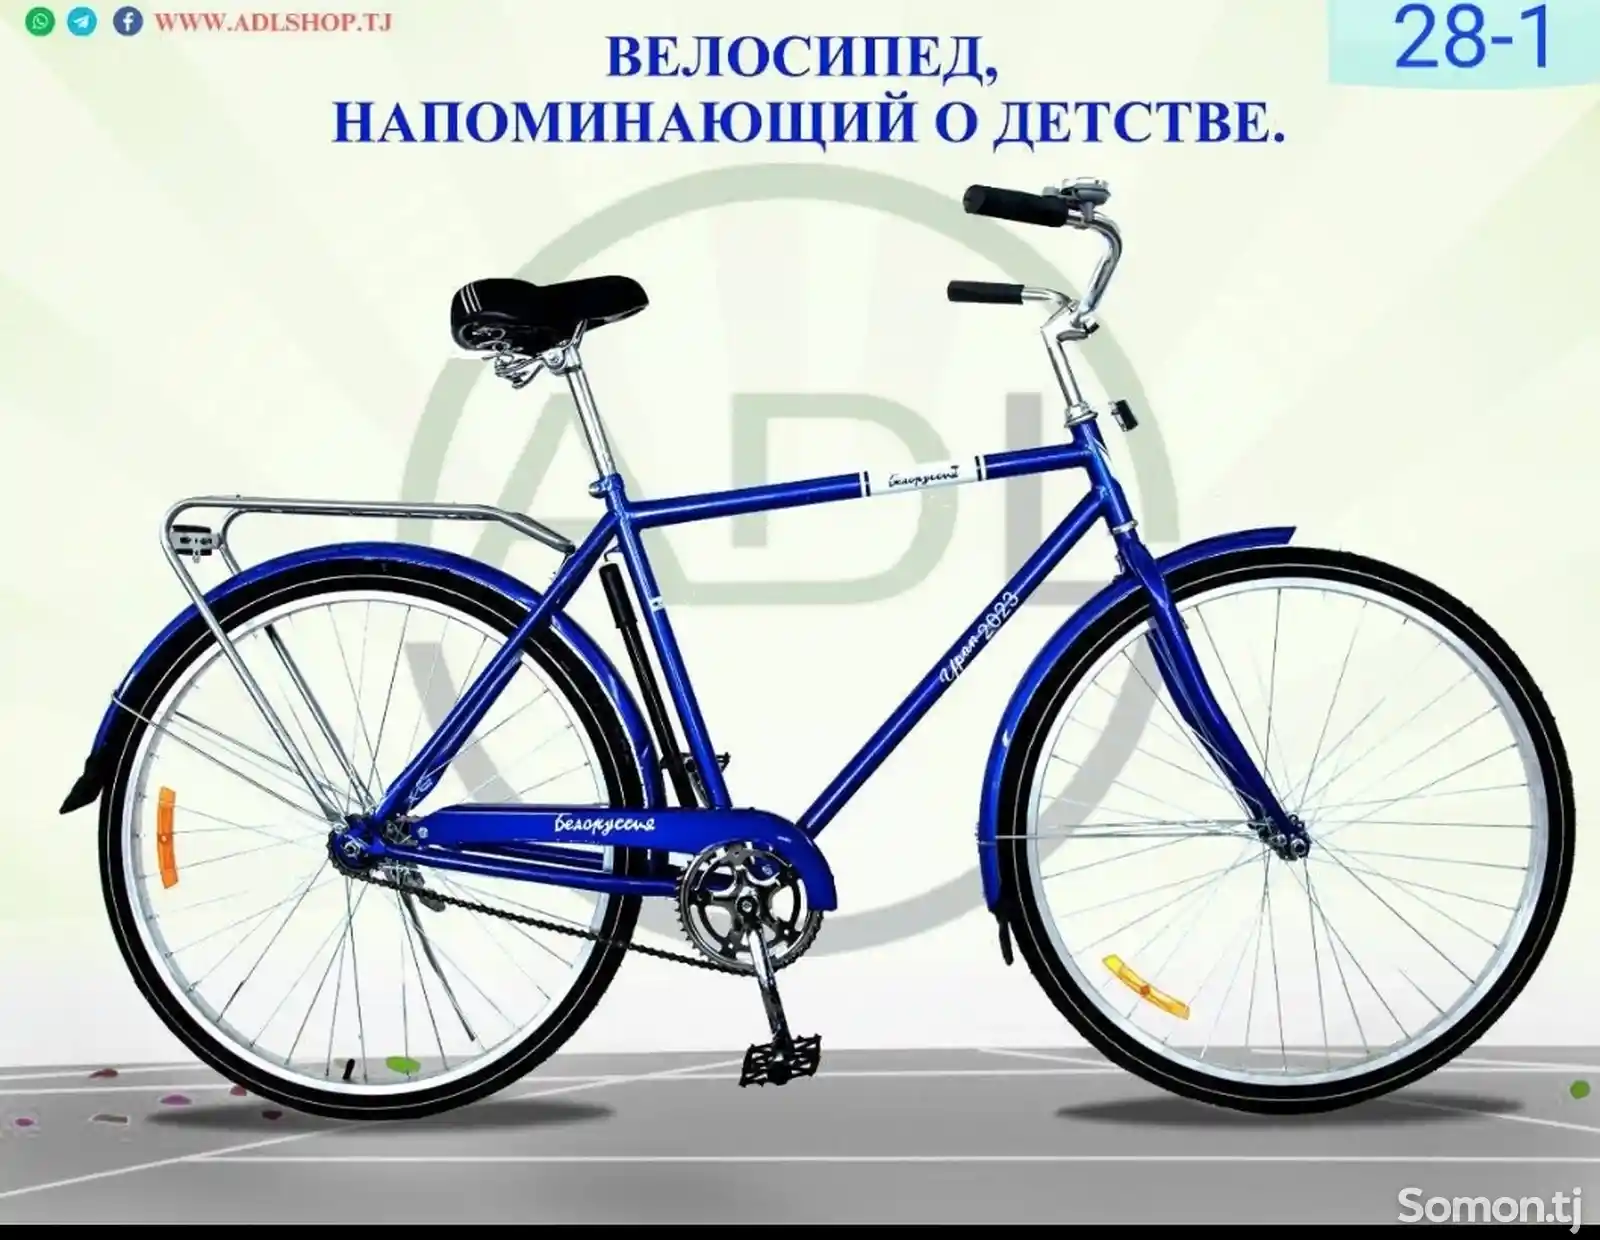 Велосипед Беларусь-1